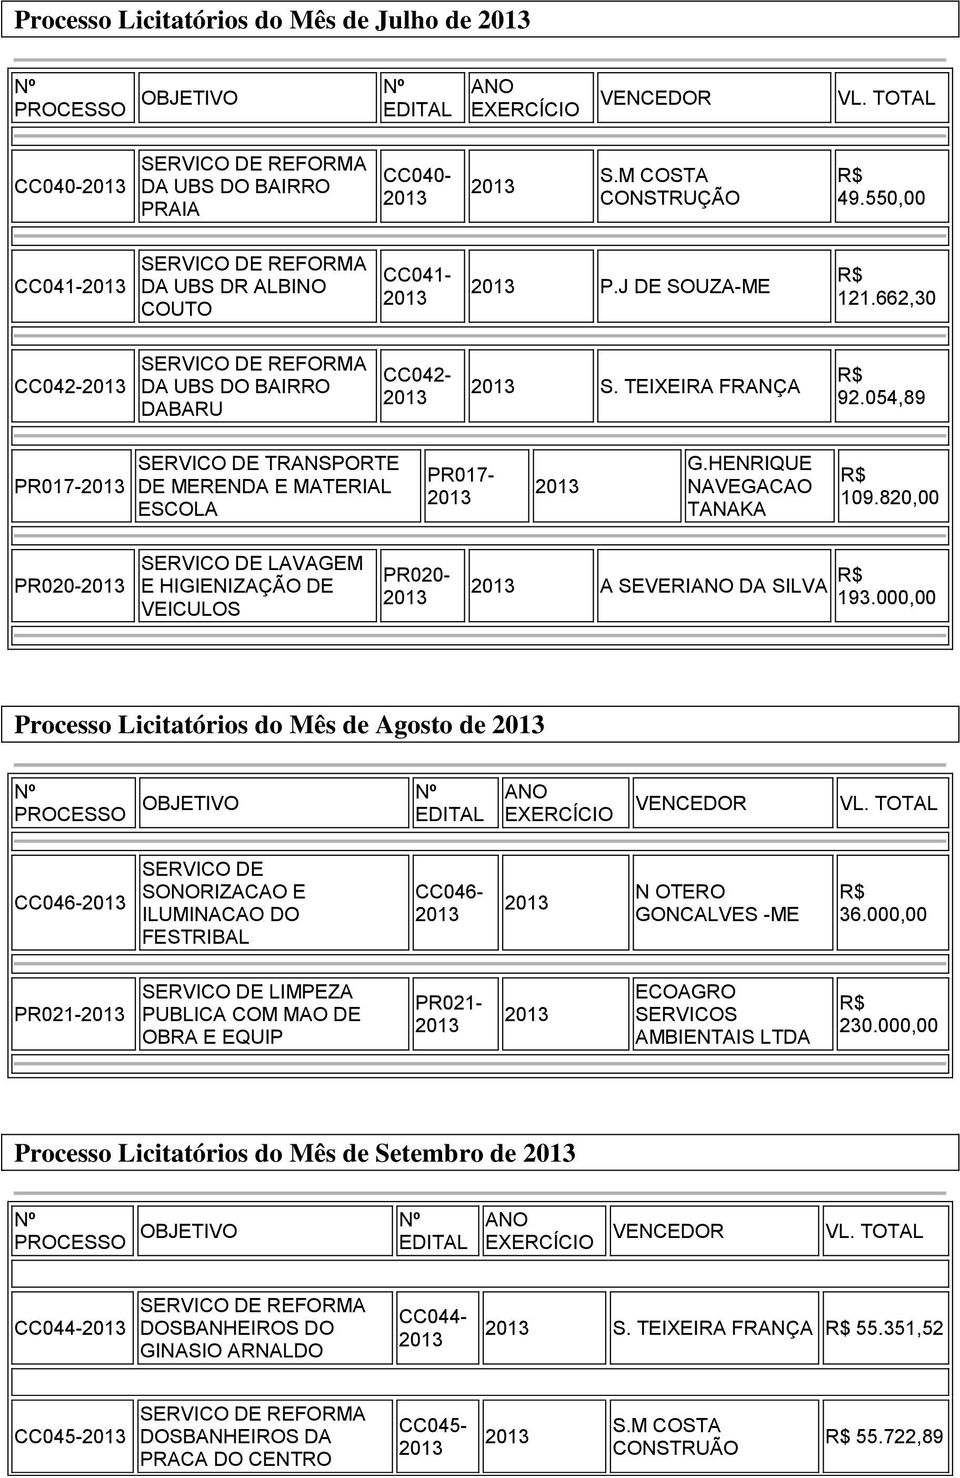 820,00 PR020- LAVAGEM E HIGIENIZAÇÃO DE VEICULOS PR020- A SEVERI DA SILVA 193.